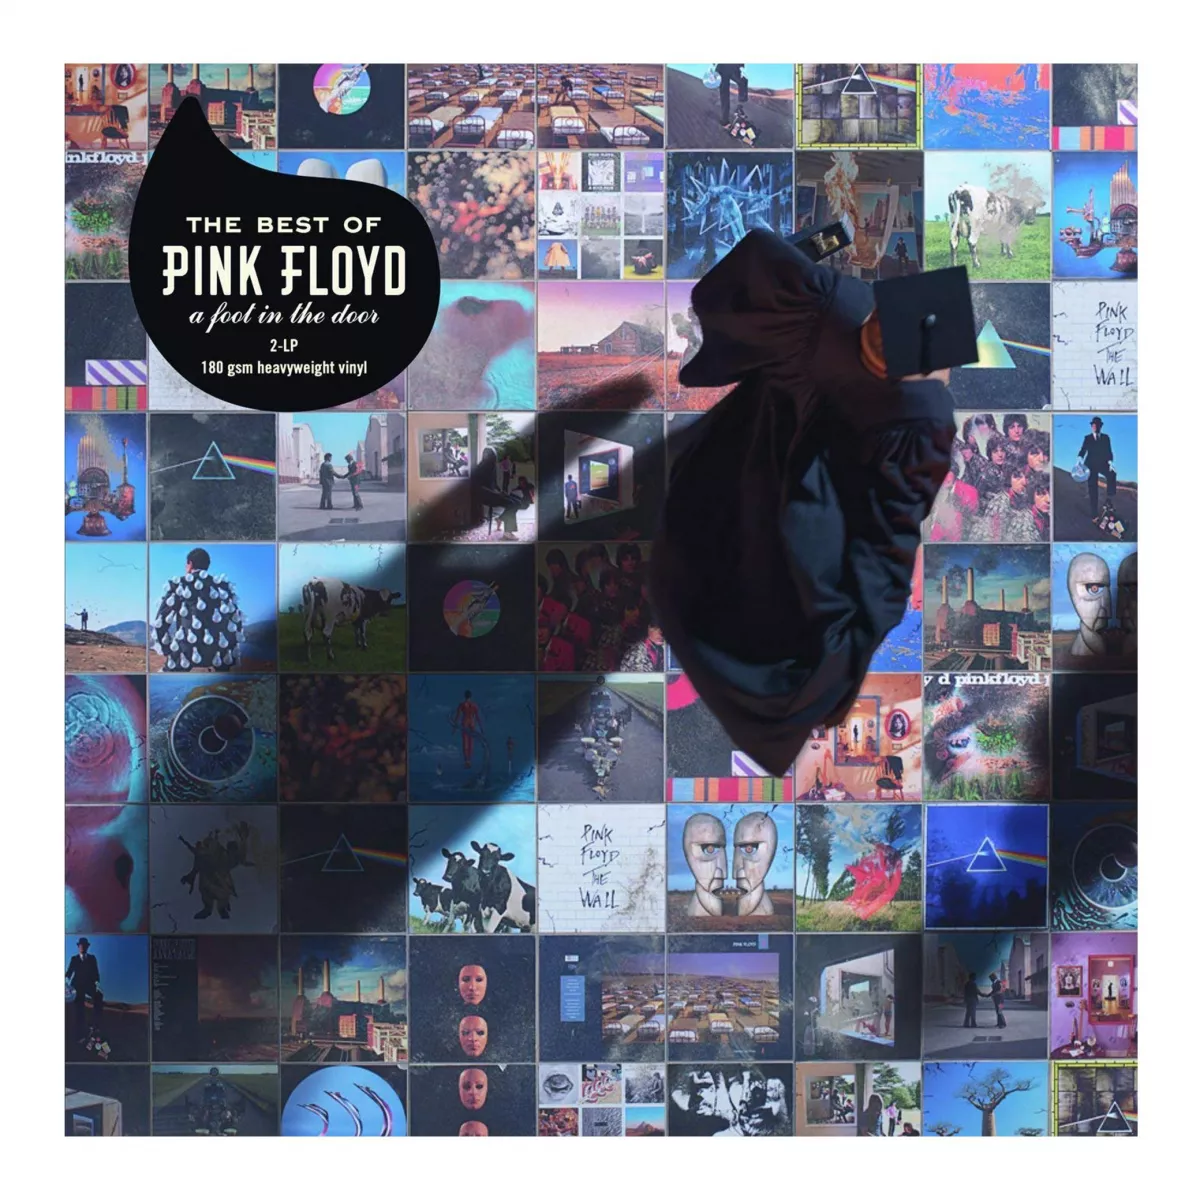 Pink Floyd-A Foot In The Door- The Best Of (180g Audiophile Pressing)-2LP, [],mediazoo.ro